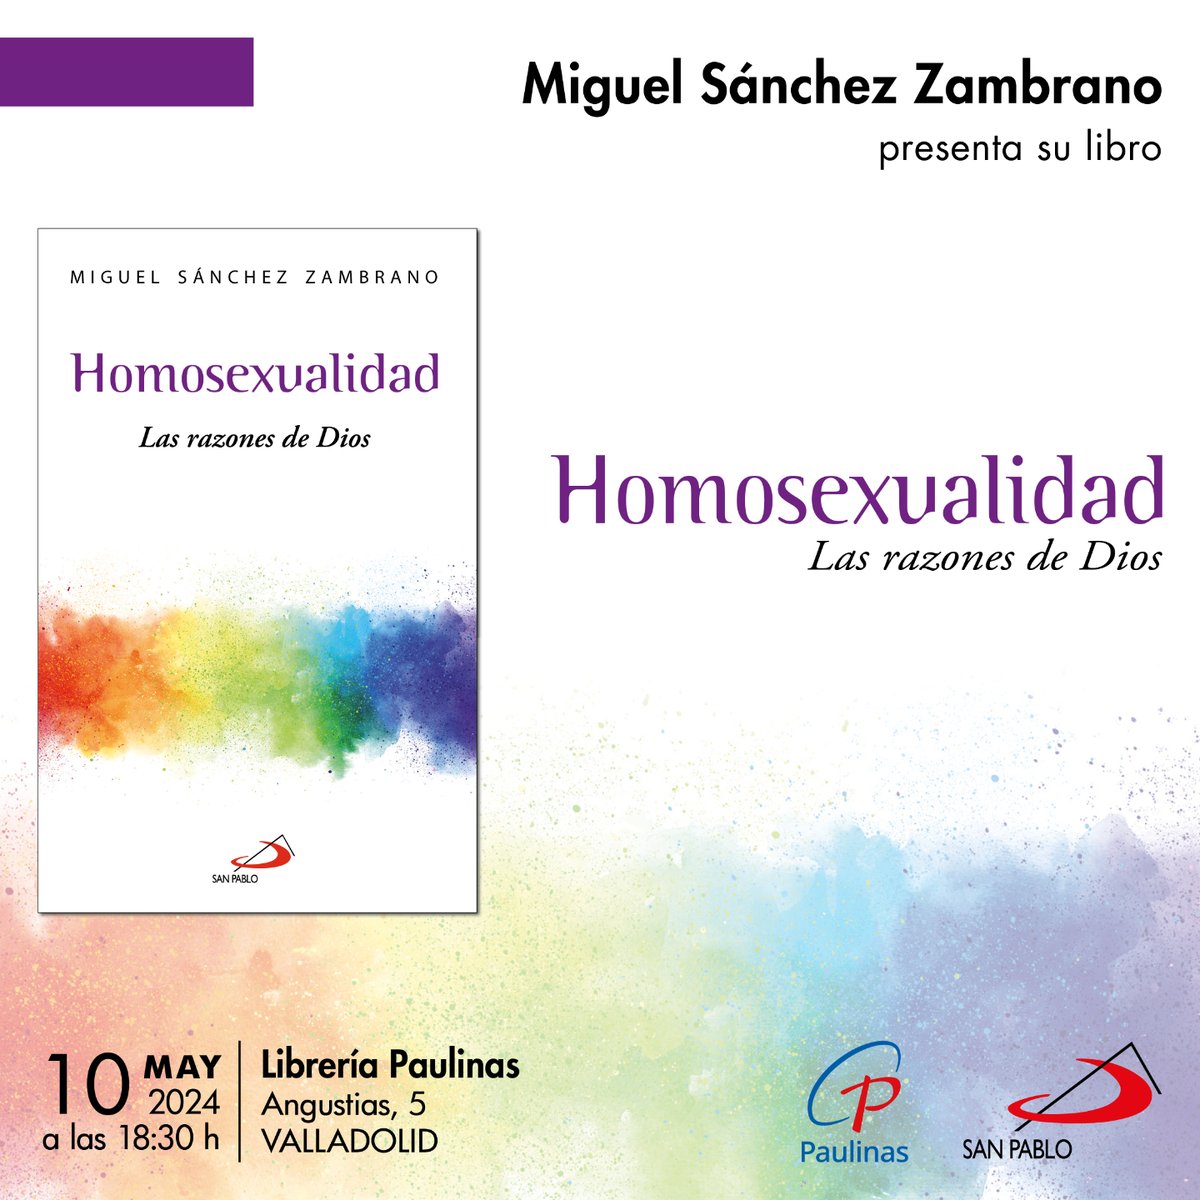 Miguel Sánchez Zambrano presentará su libro «Homosexualidad. Las razones de Dios» (Editorial San Pablo) en la Librería Paulinas de Valladolid el 10 de mayo de 2024. ¡Te esperamos!